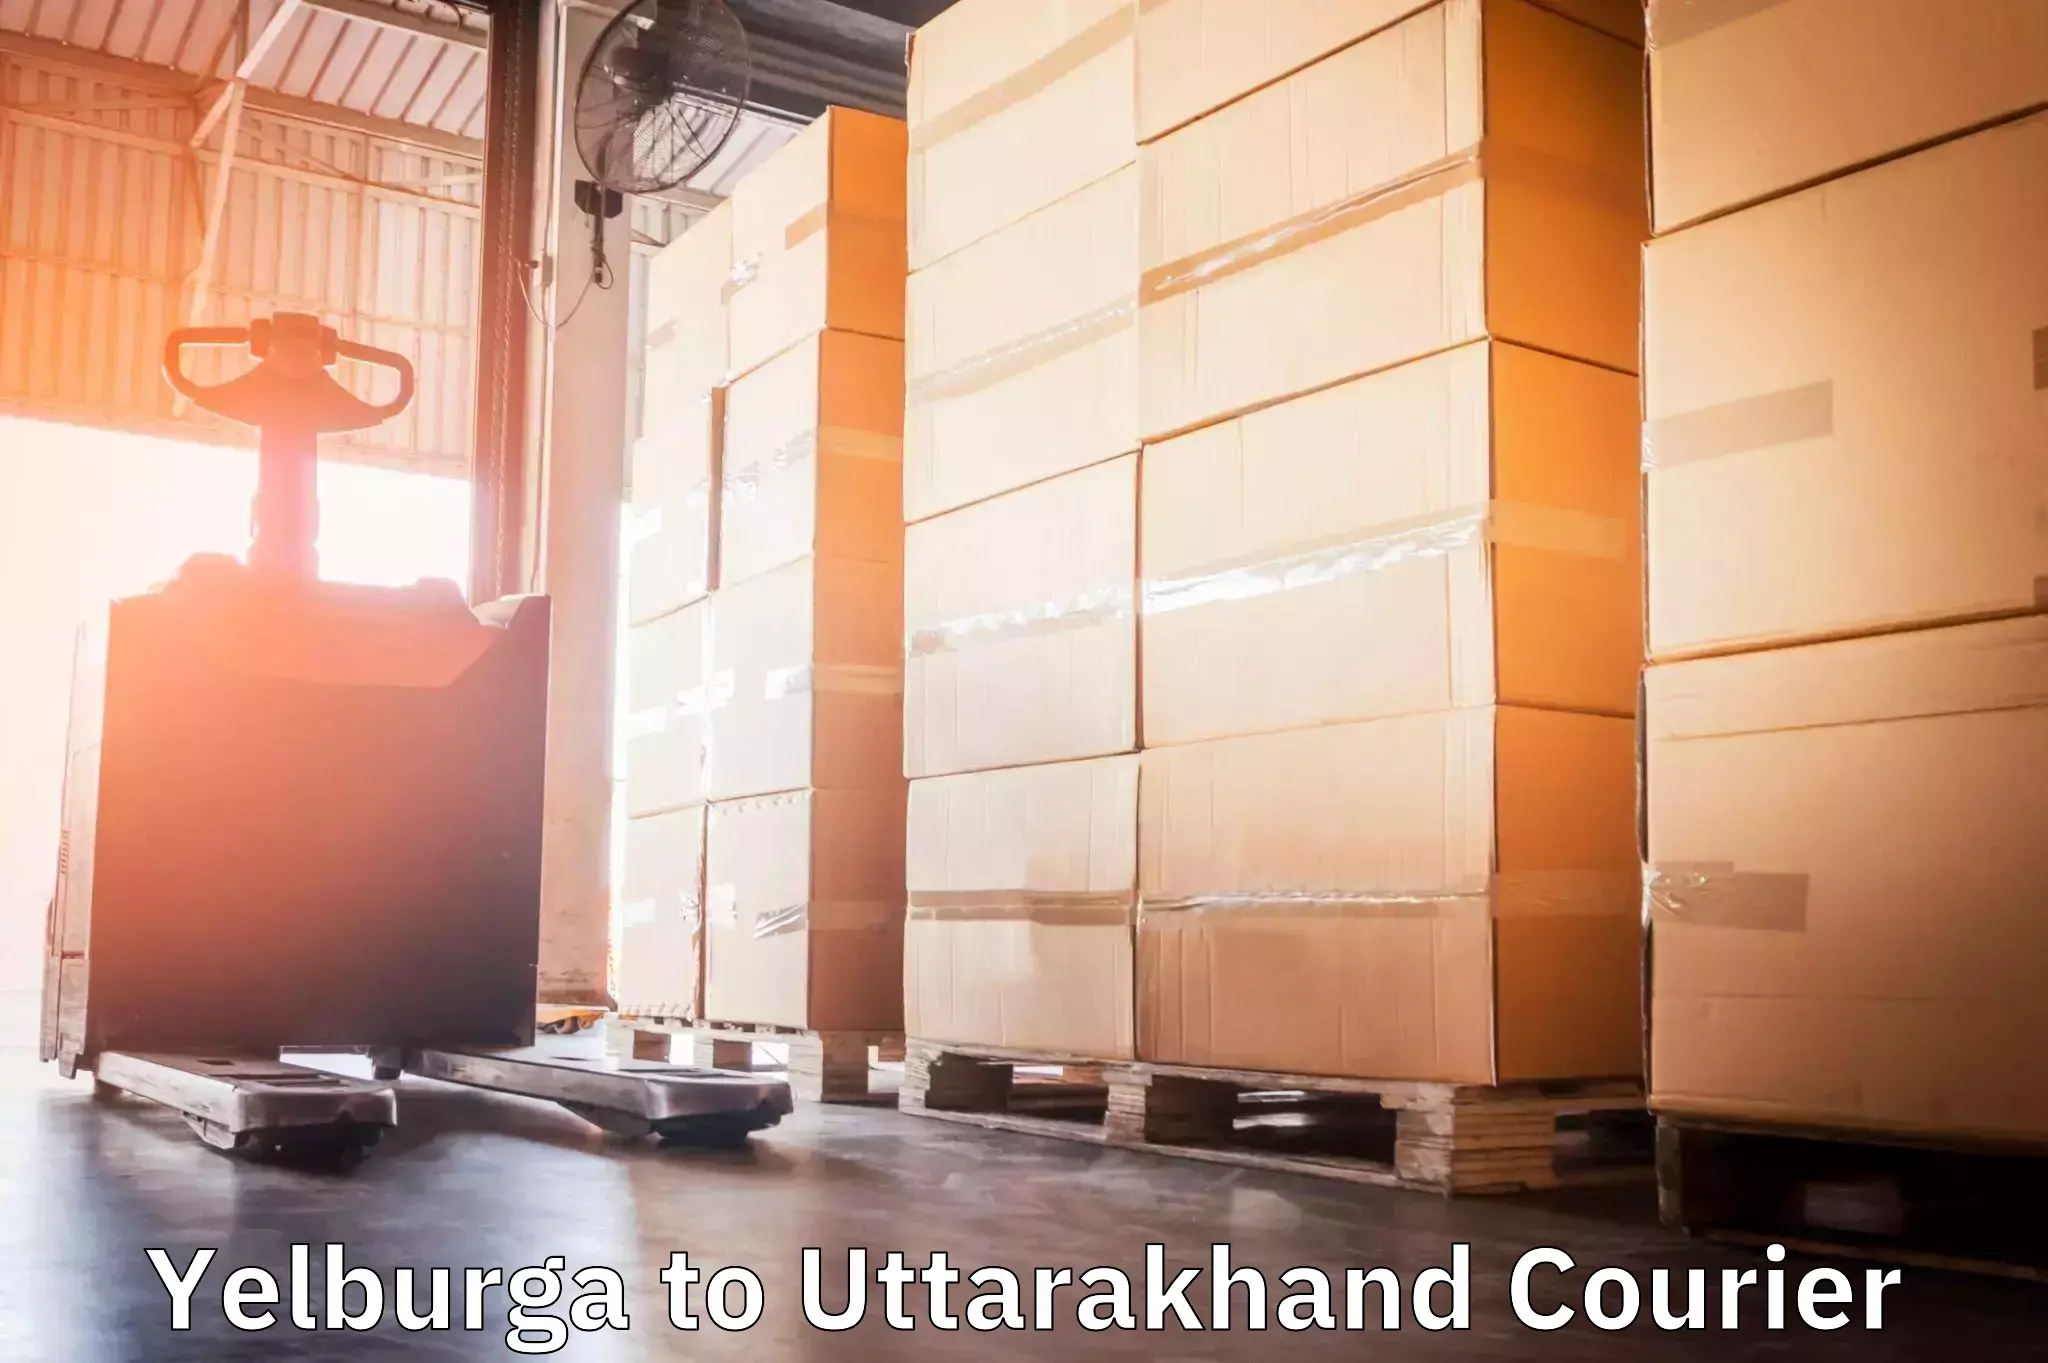 Global logistics network Yelburga to Uttarakhand